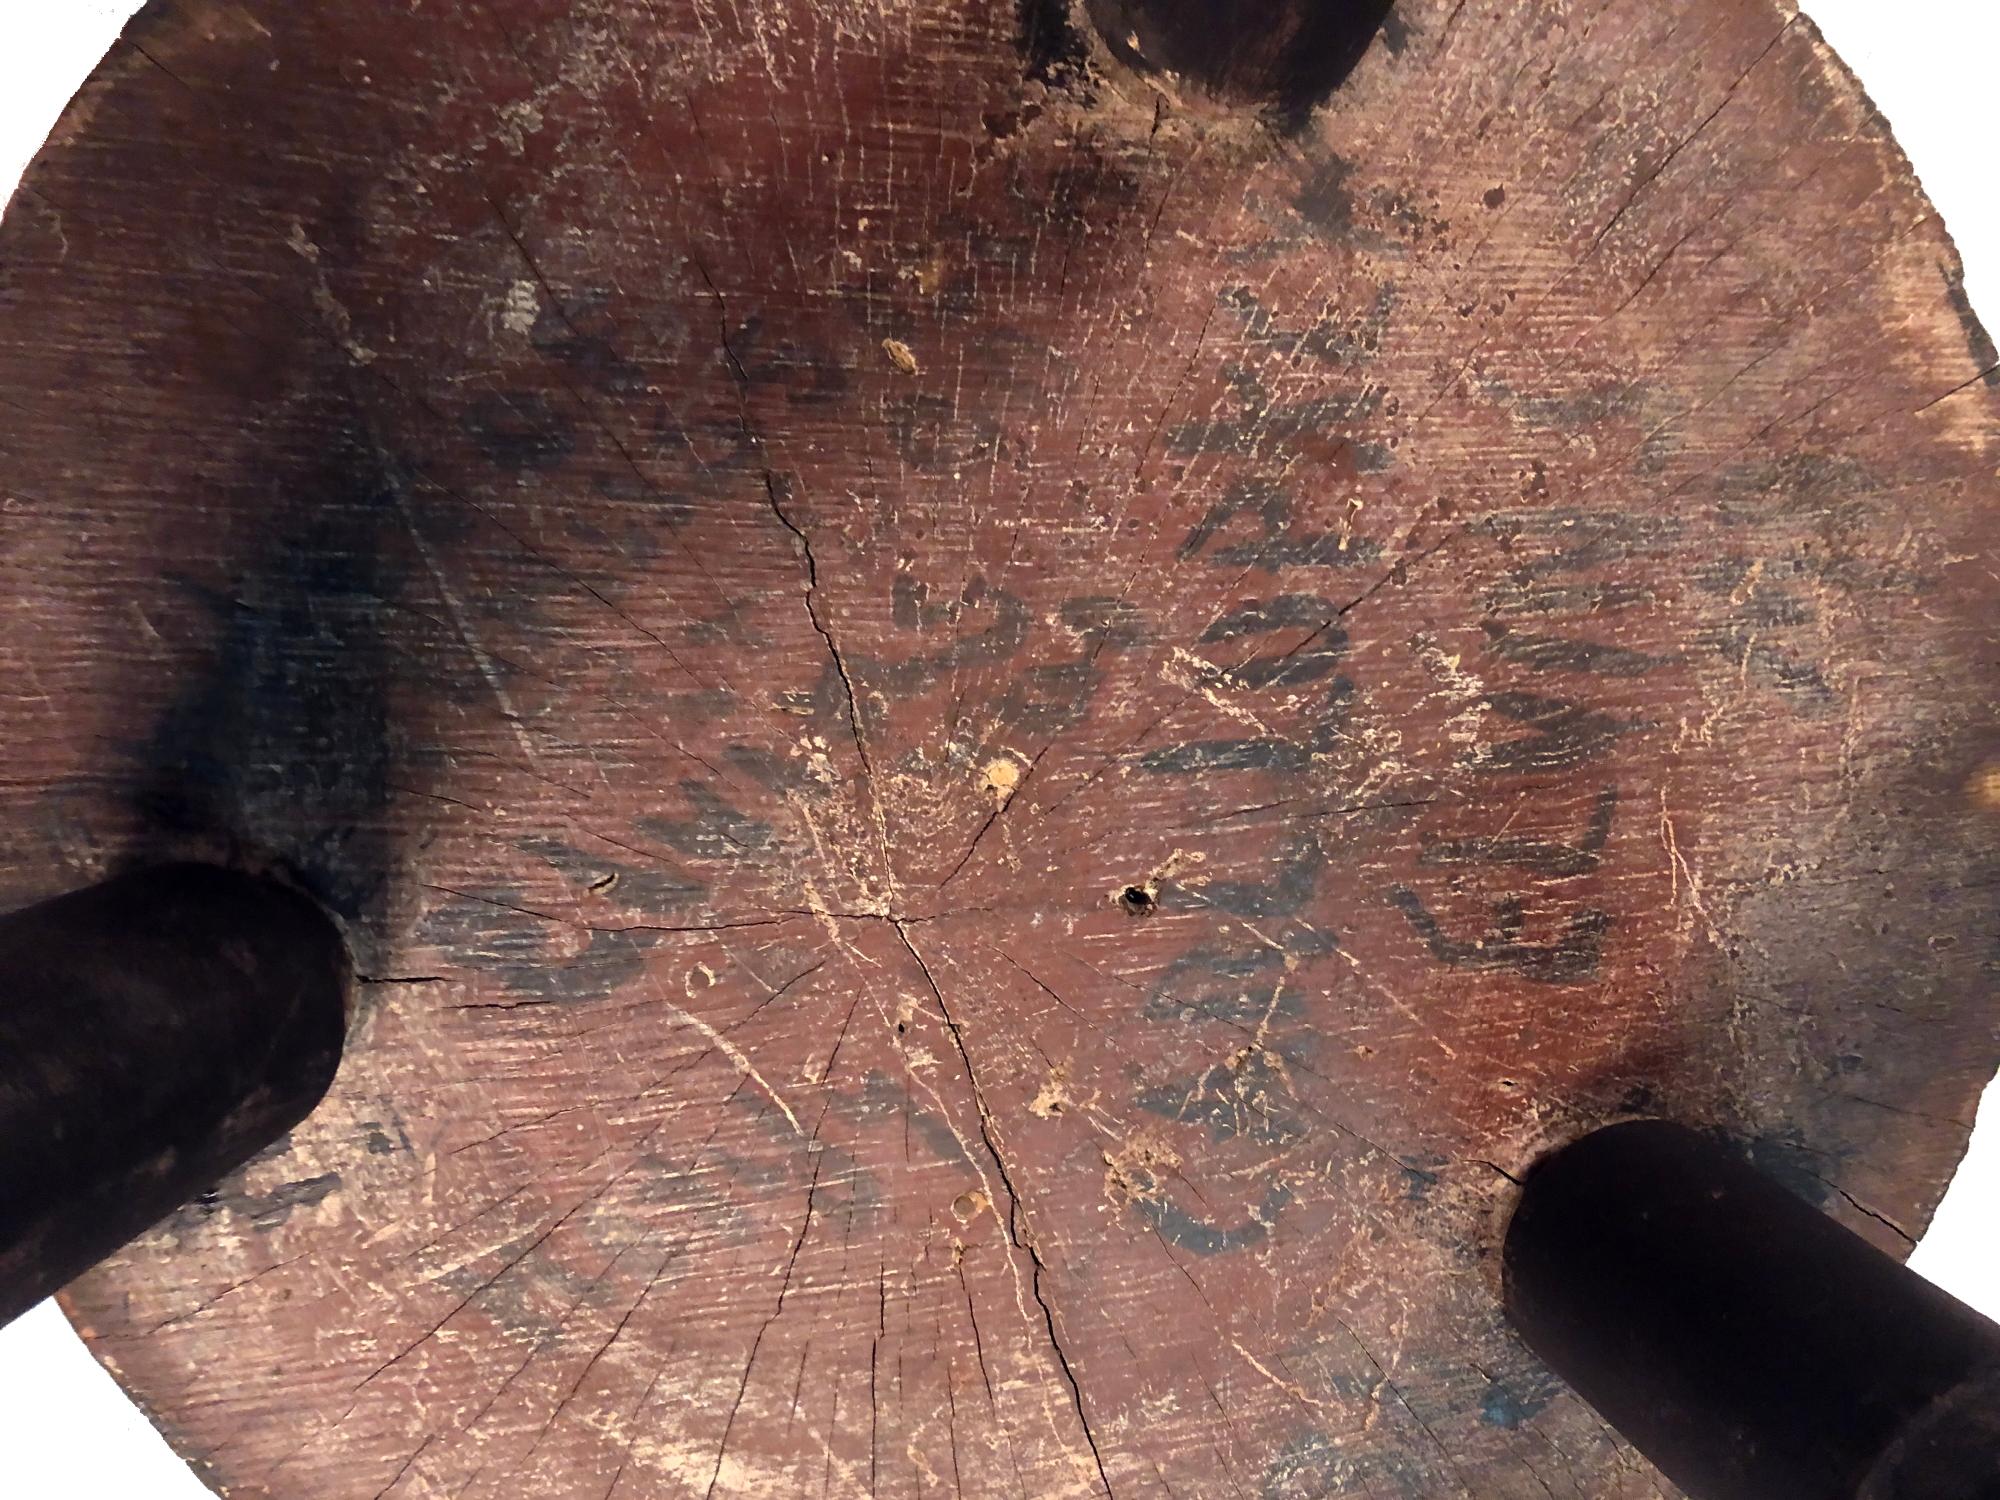 Exceptionnel billot de boucher en peinture noire, avec une grande forme ronde en forme de tonneau, origine Missouri, 1850-1890

Trouvé dans le Missouri, ce bloc de boucherie du milieu et de la fin du XIXe siècle, avec sa belle forme de tonneau,